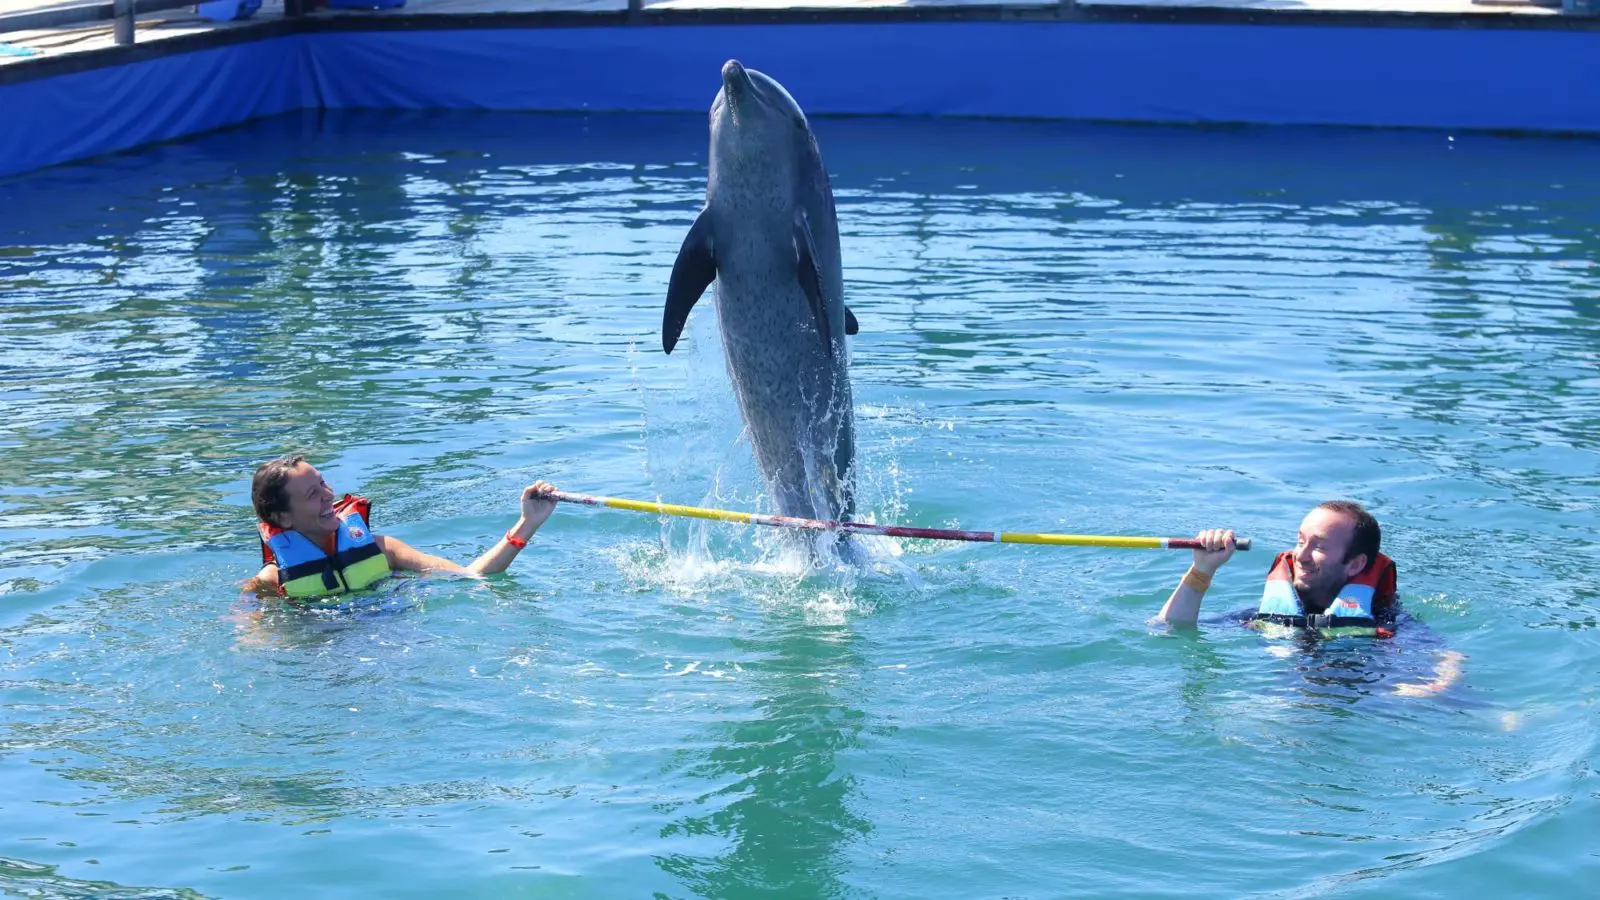 wisatawan sedang bermain bersama lumba-lumba di kolam